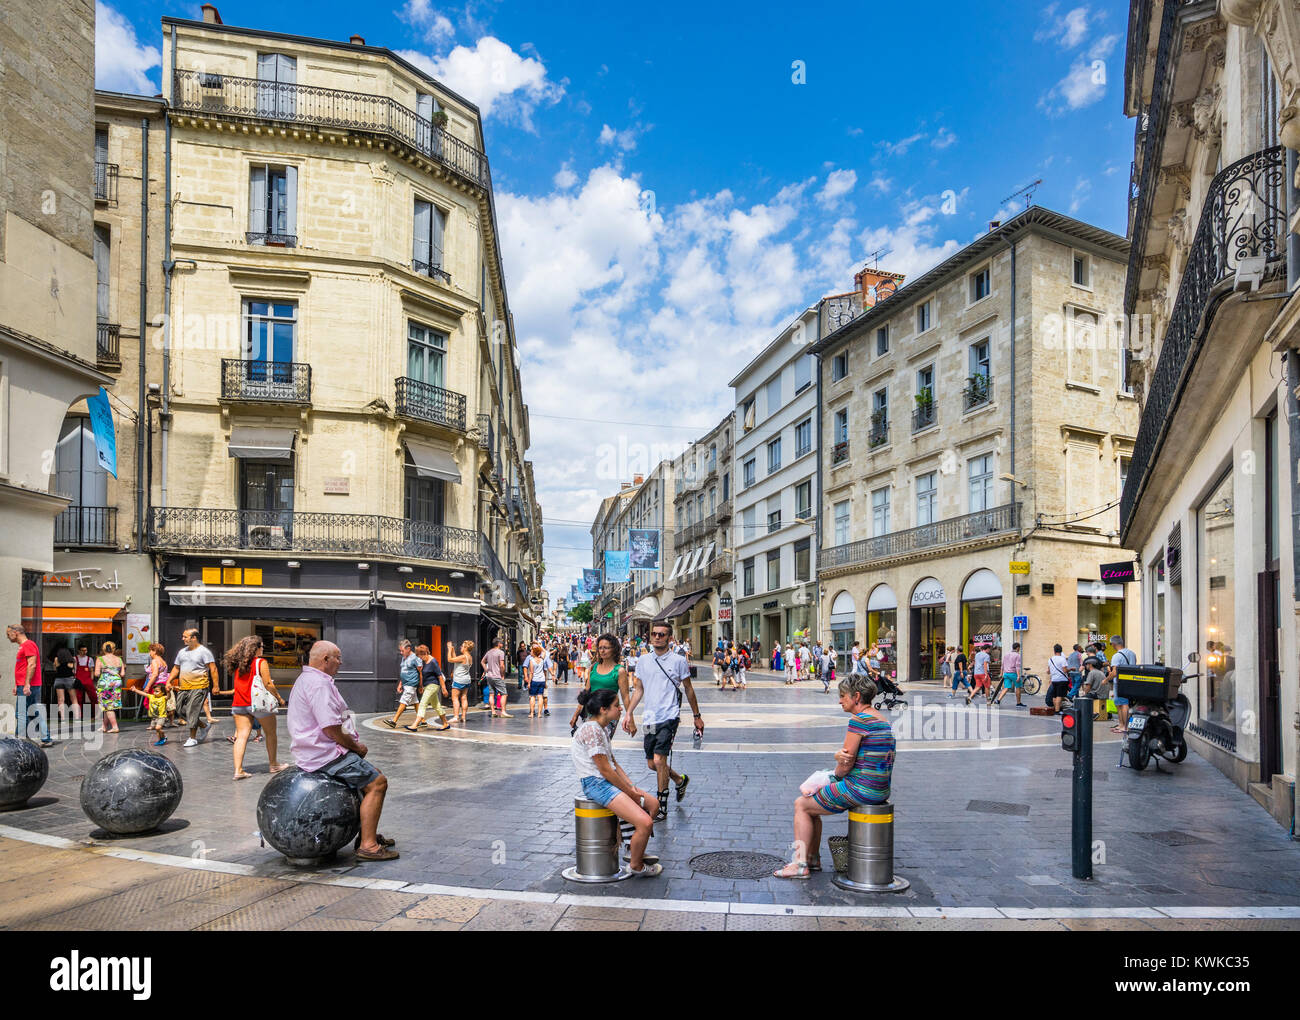 Francia, departamento de Hérault, Montpellier, ocupada en la Rue de la loge en el centro histórico de la ciudad es una importante arteria comercial e histórico Foto de stock